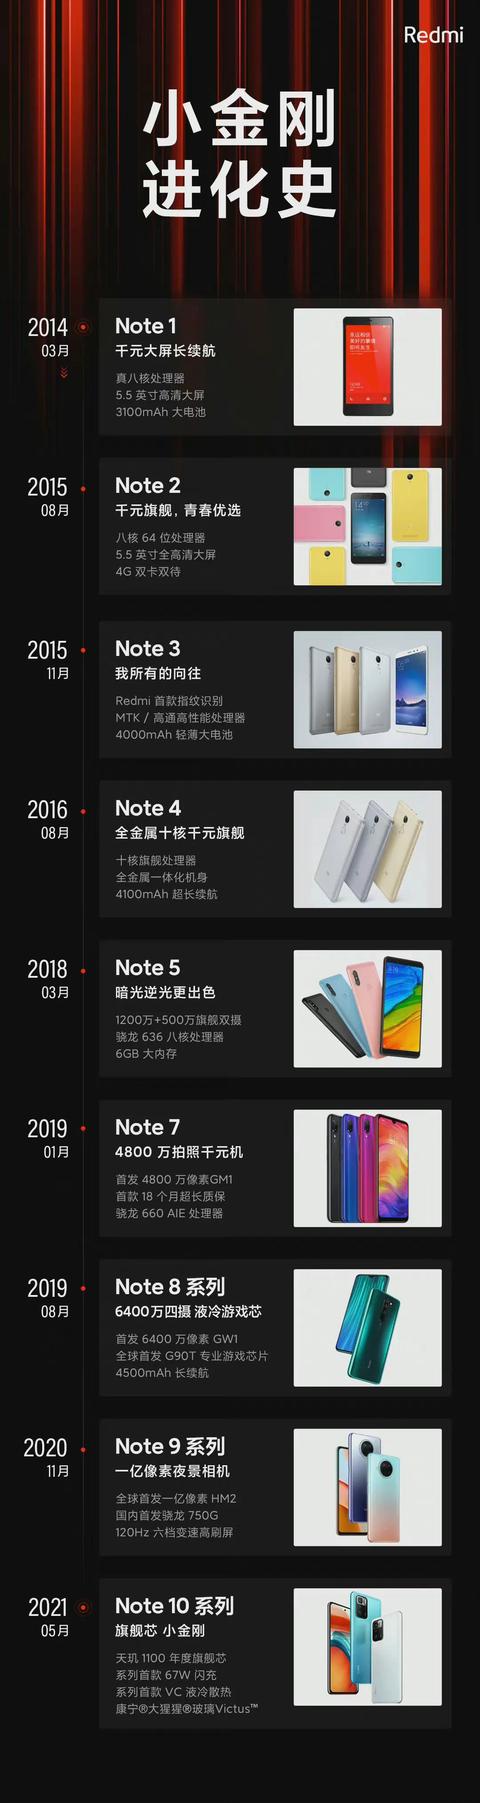 红米 Note11将于10月28日19:00发布